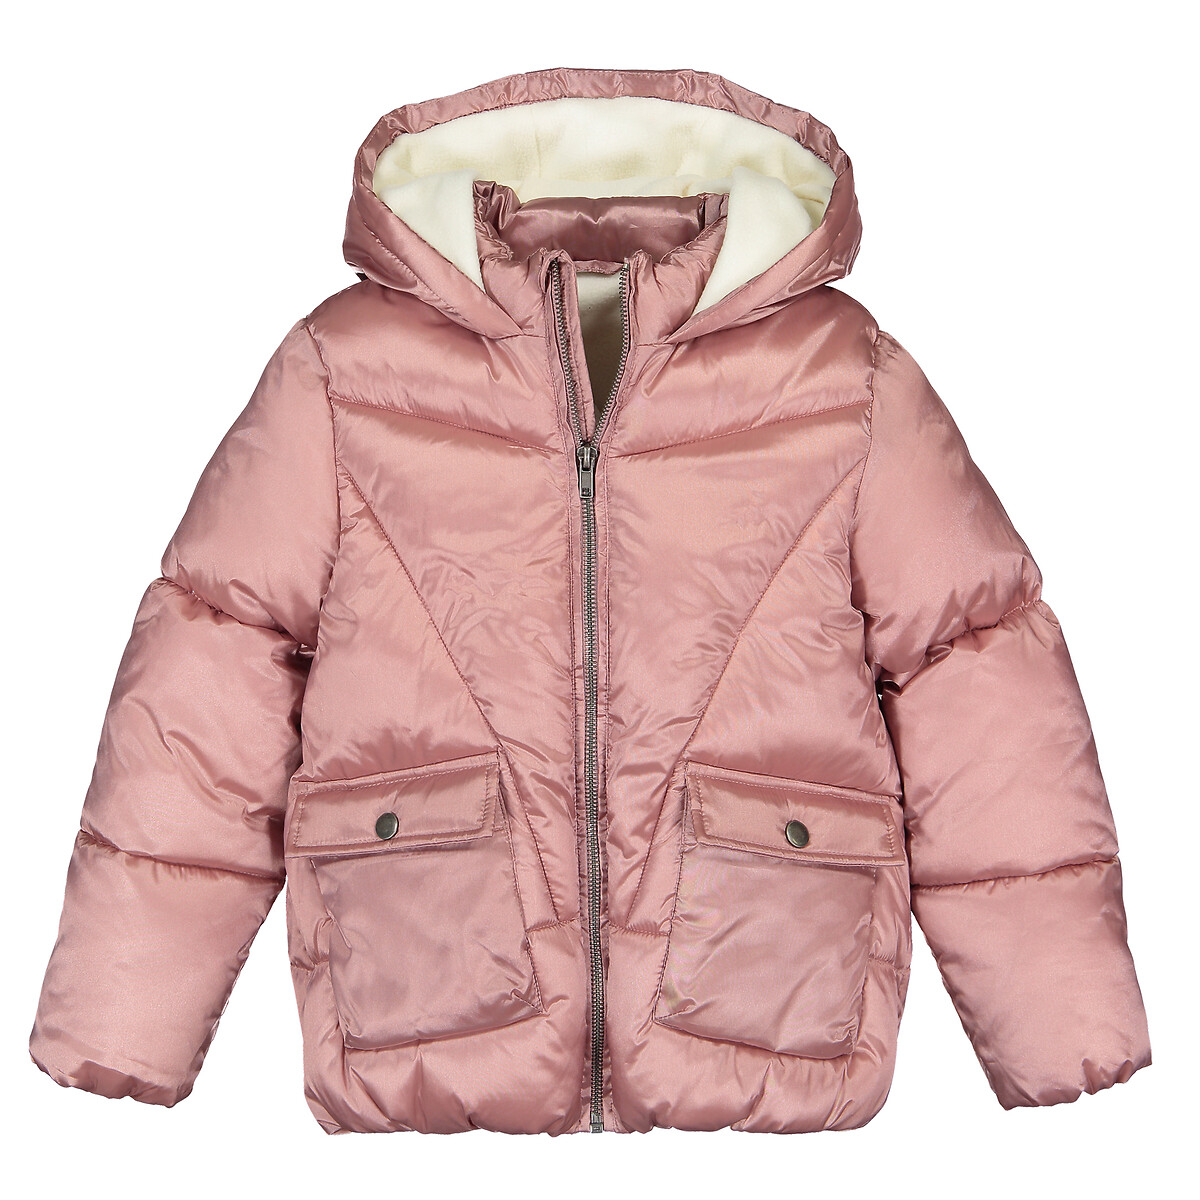 Куртка LaRedoute Стеганая с капюшоном подкладка из микрофлиса 3-12 лет 4 года - 102 см розовый, размер 4 года - 102 см - фото 3